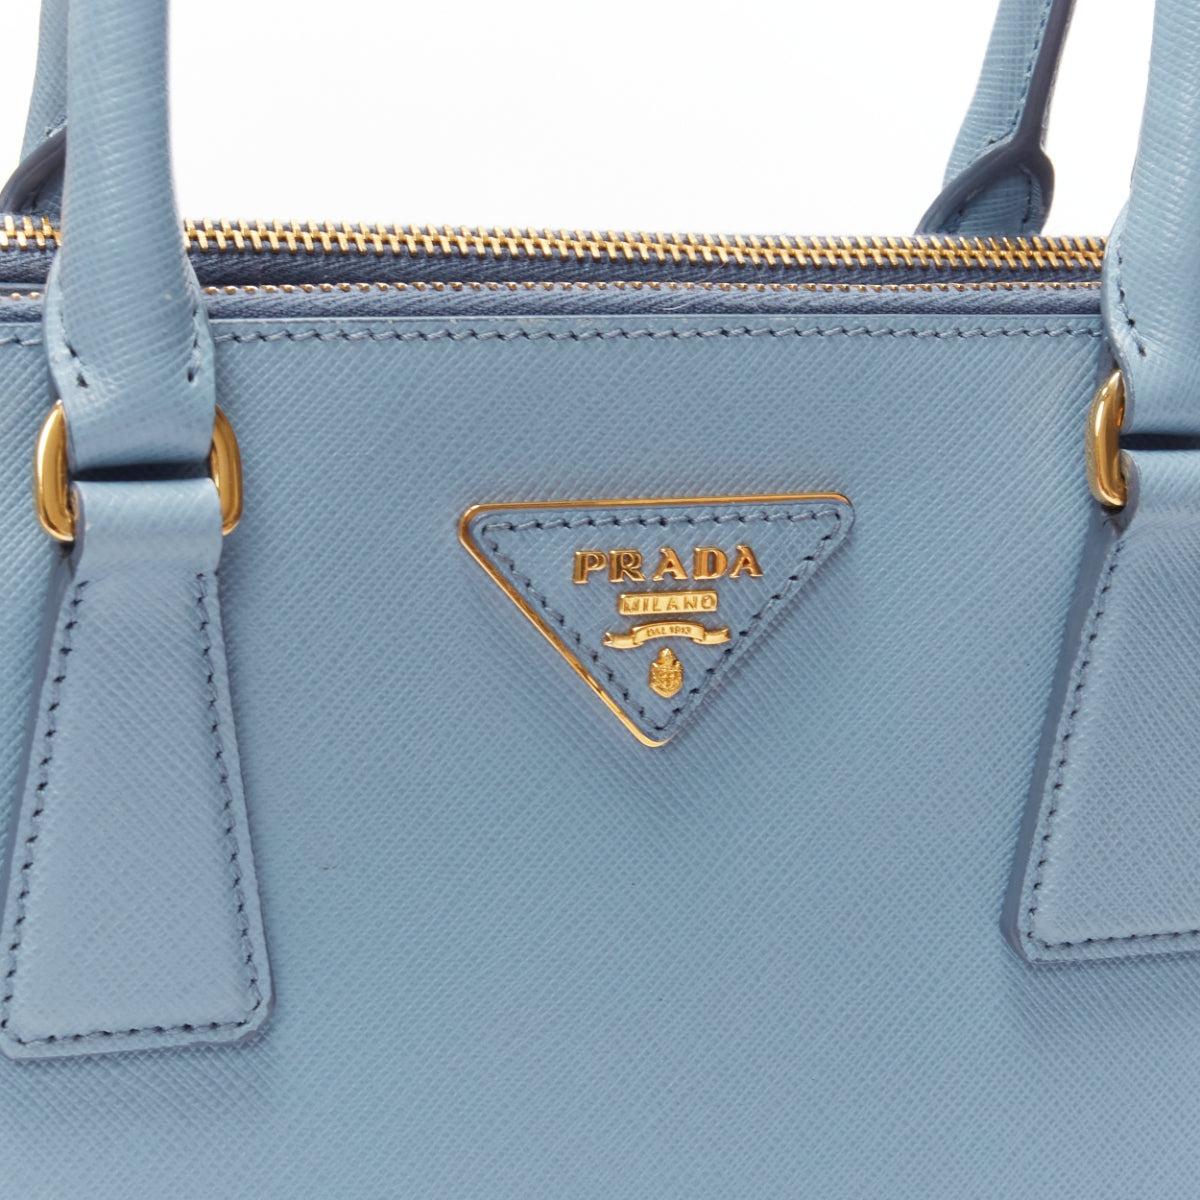 PRADA Galleria light blue saffiano leather triangle logo shoulder tote bag 3